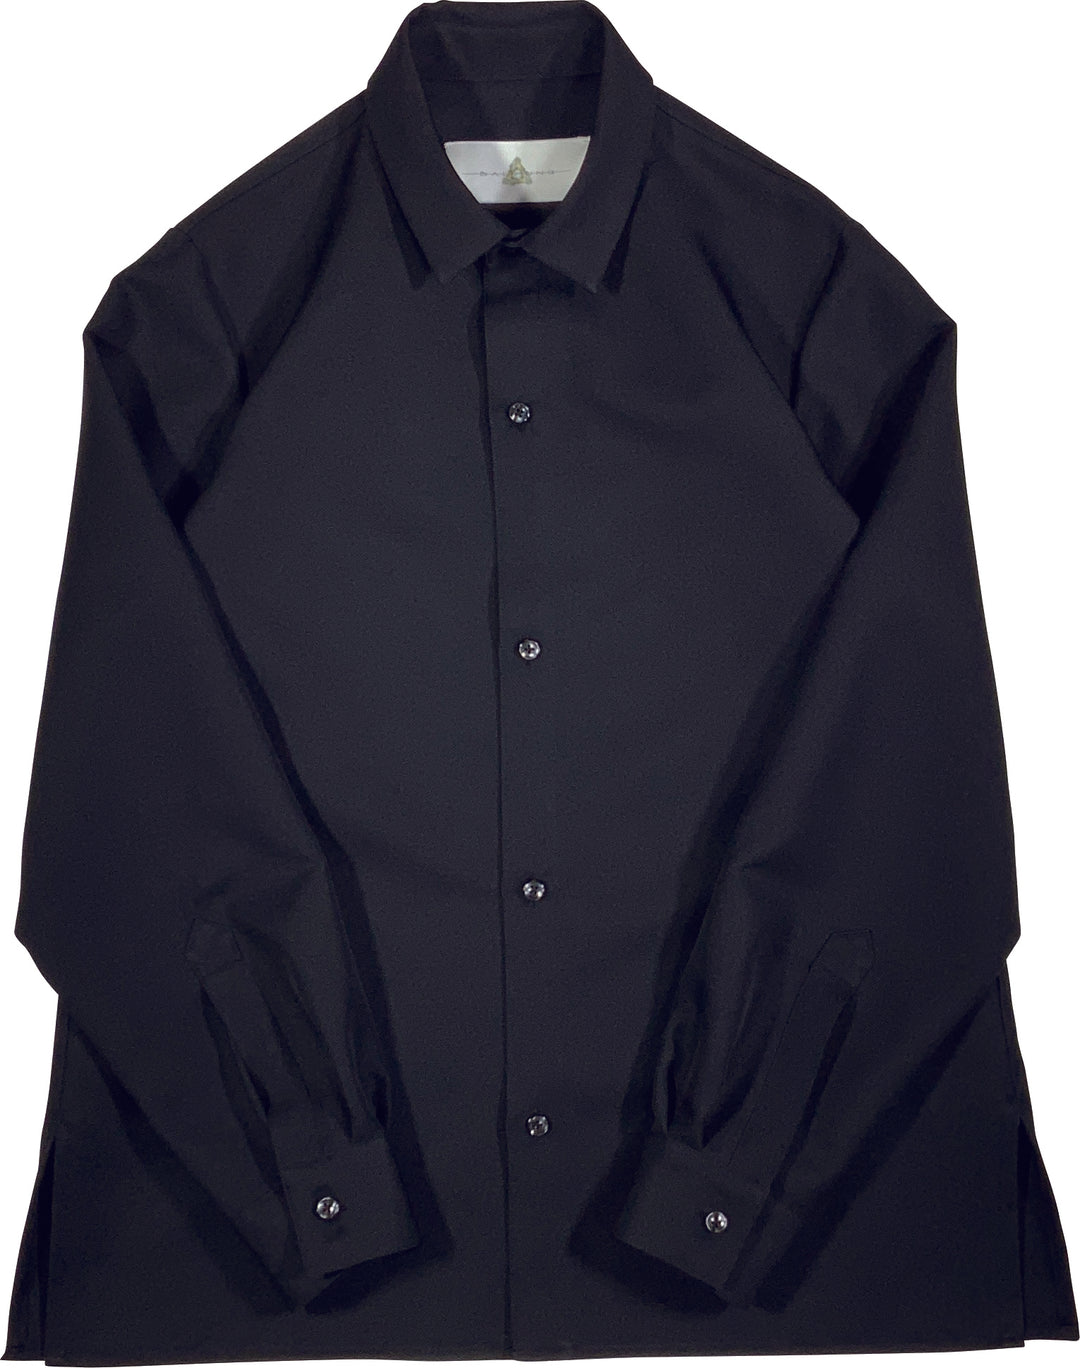 "FORM" Basic Shirt - Black